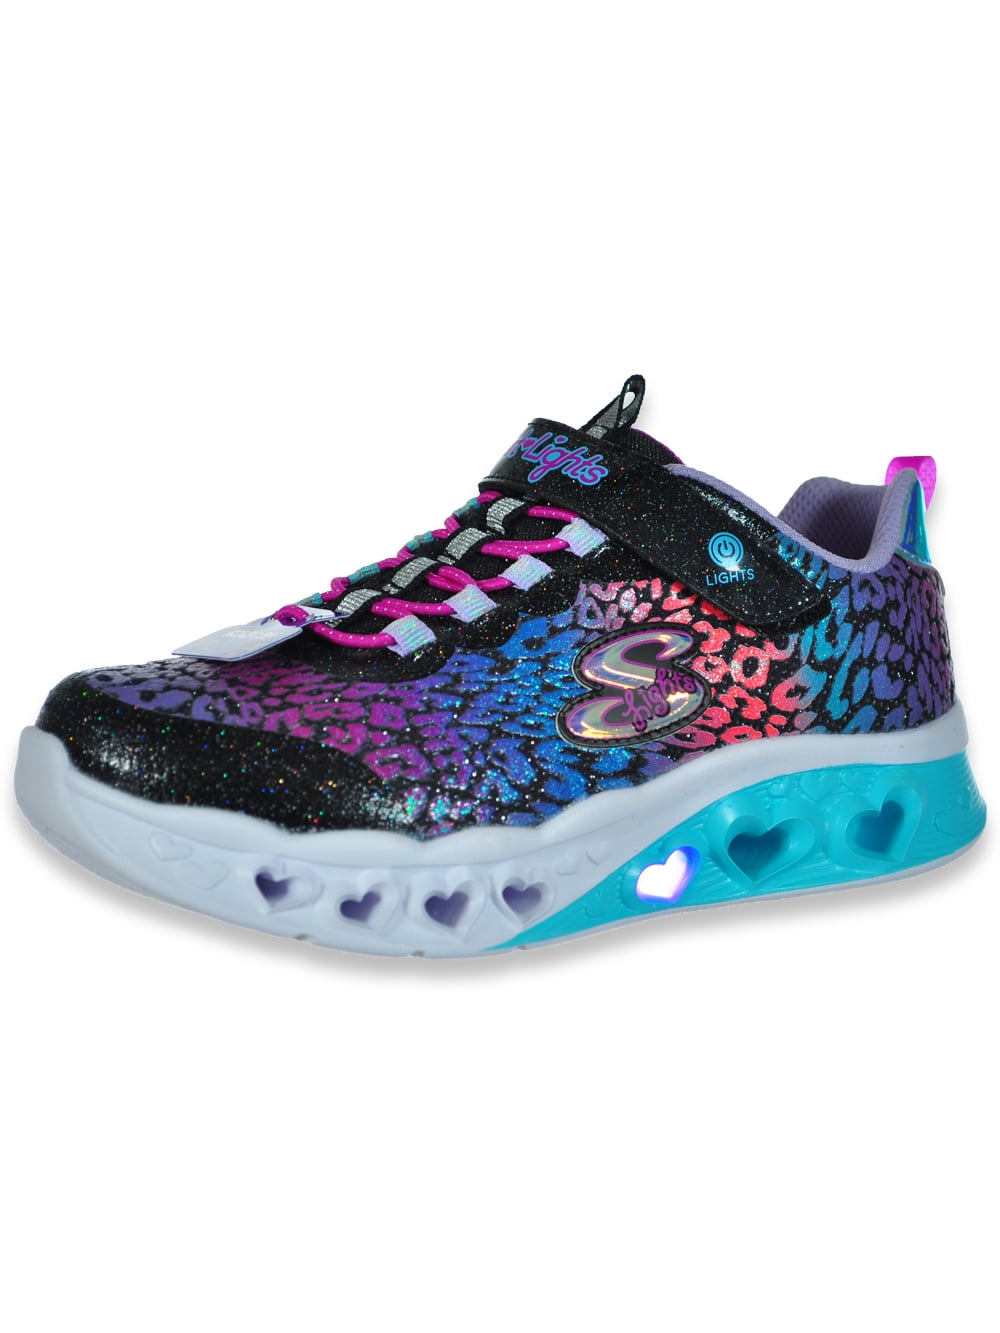 novato Más músico Skechers Girls' Leopard Heart Light-Up Sneakers - black multi, 13 youth -  Walmart.com